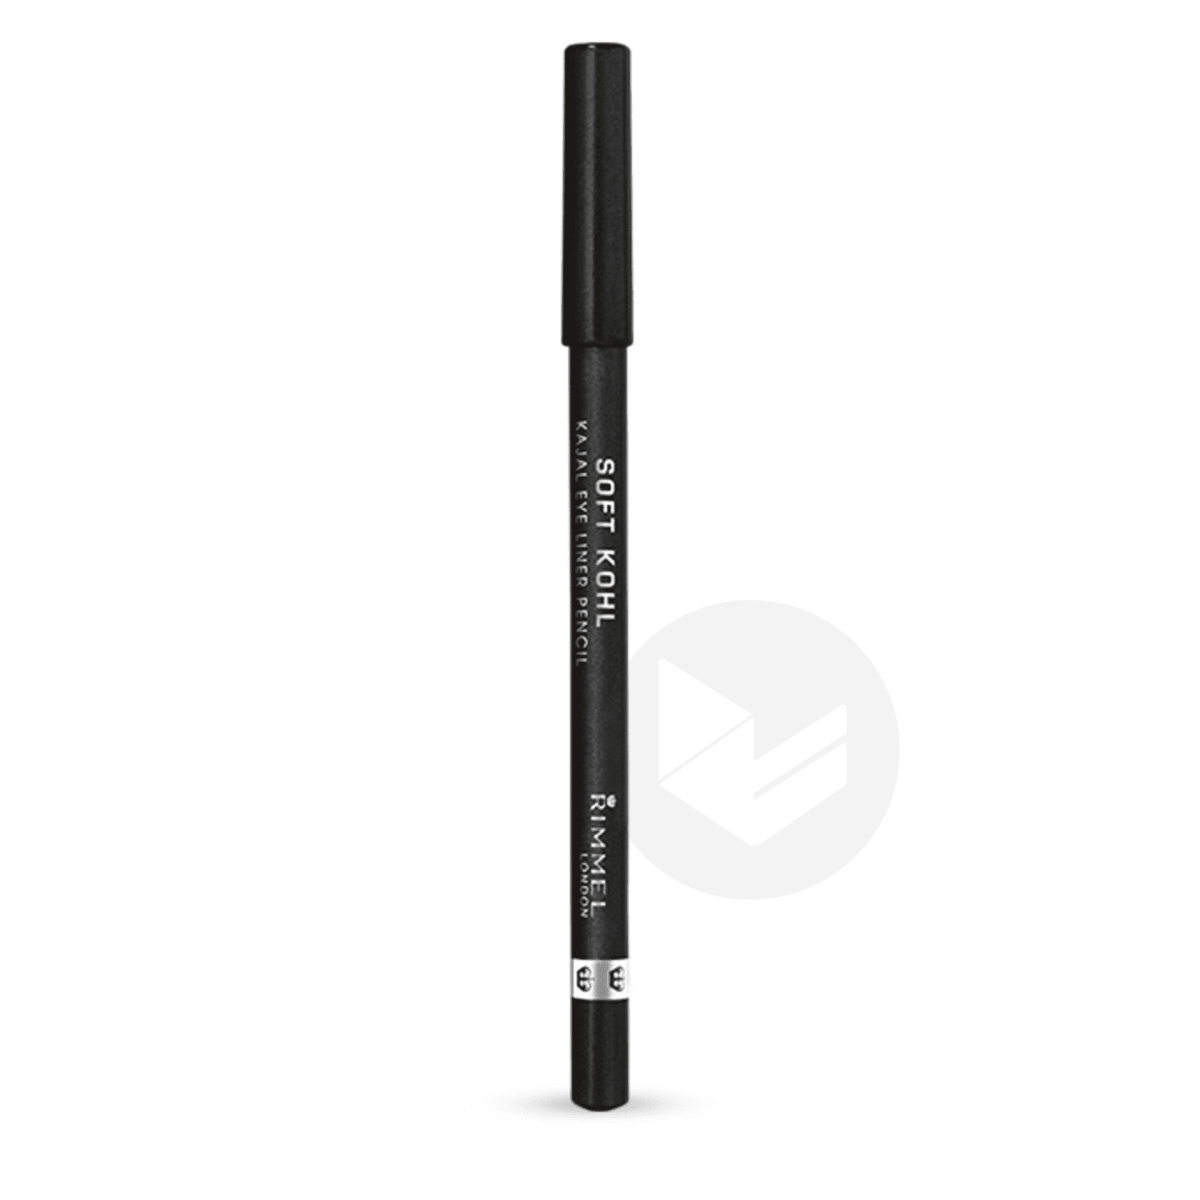 Crayon Soft Khol 061 Jet Black 1.2g